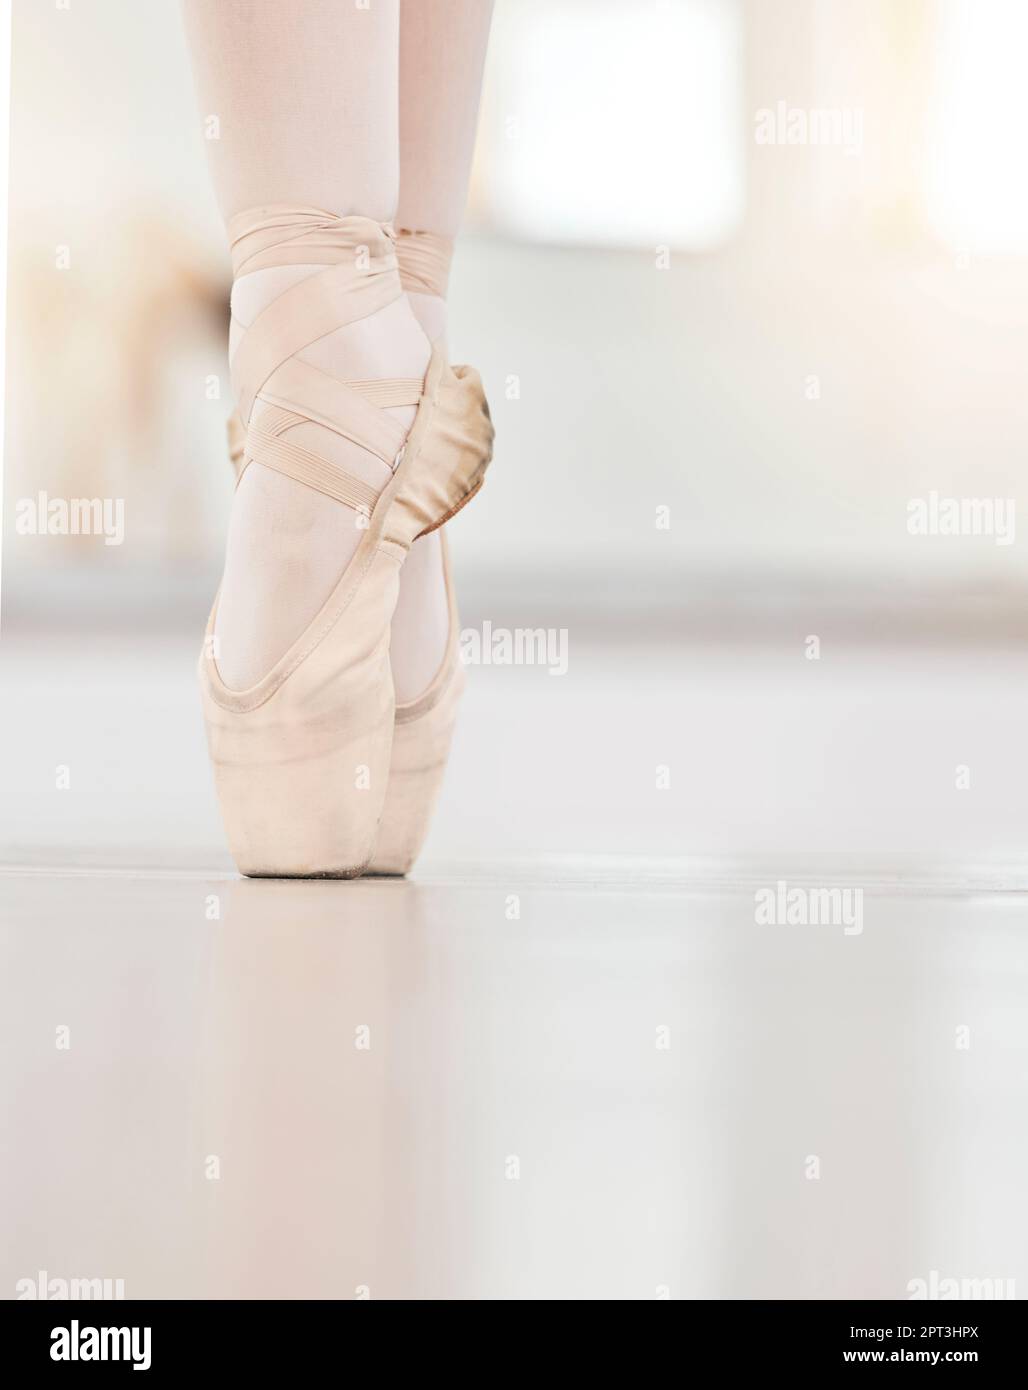 Zoom auf die Füße der Tänzer auf dem Boden, den Ballettschuh und die Zehenspitze, zeigen Haltung und Gleichgewicht beim Tanztraining. Nahaufnahme von Mädchen tanzen im Studio-Training, in Stockfoto